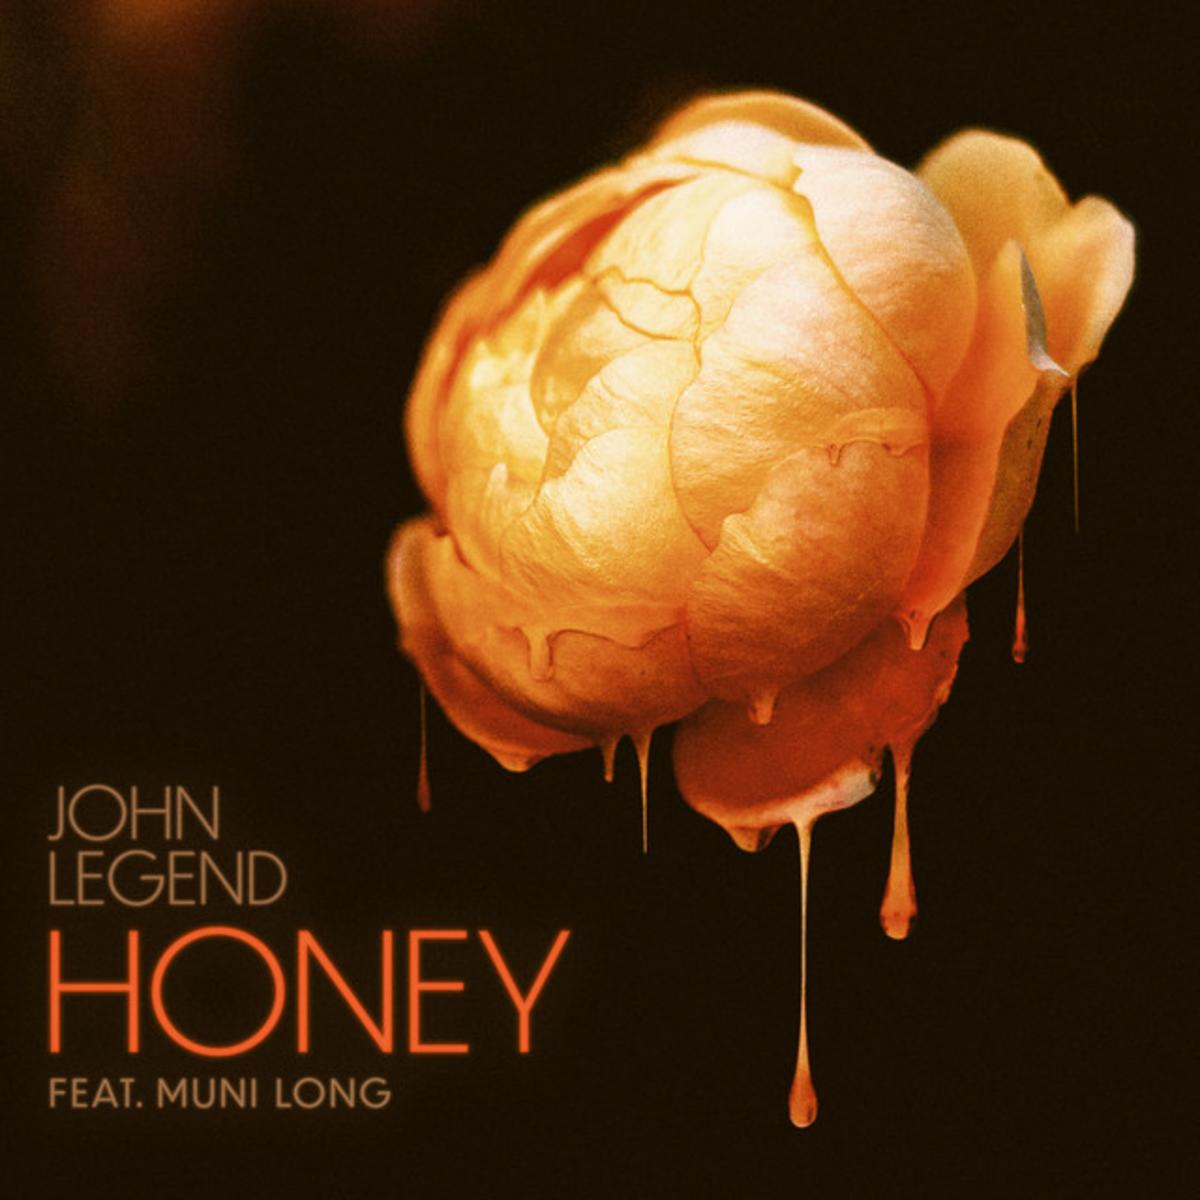 John Legend & Muni Long Unite For “Honey”